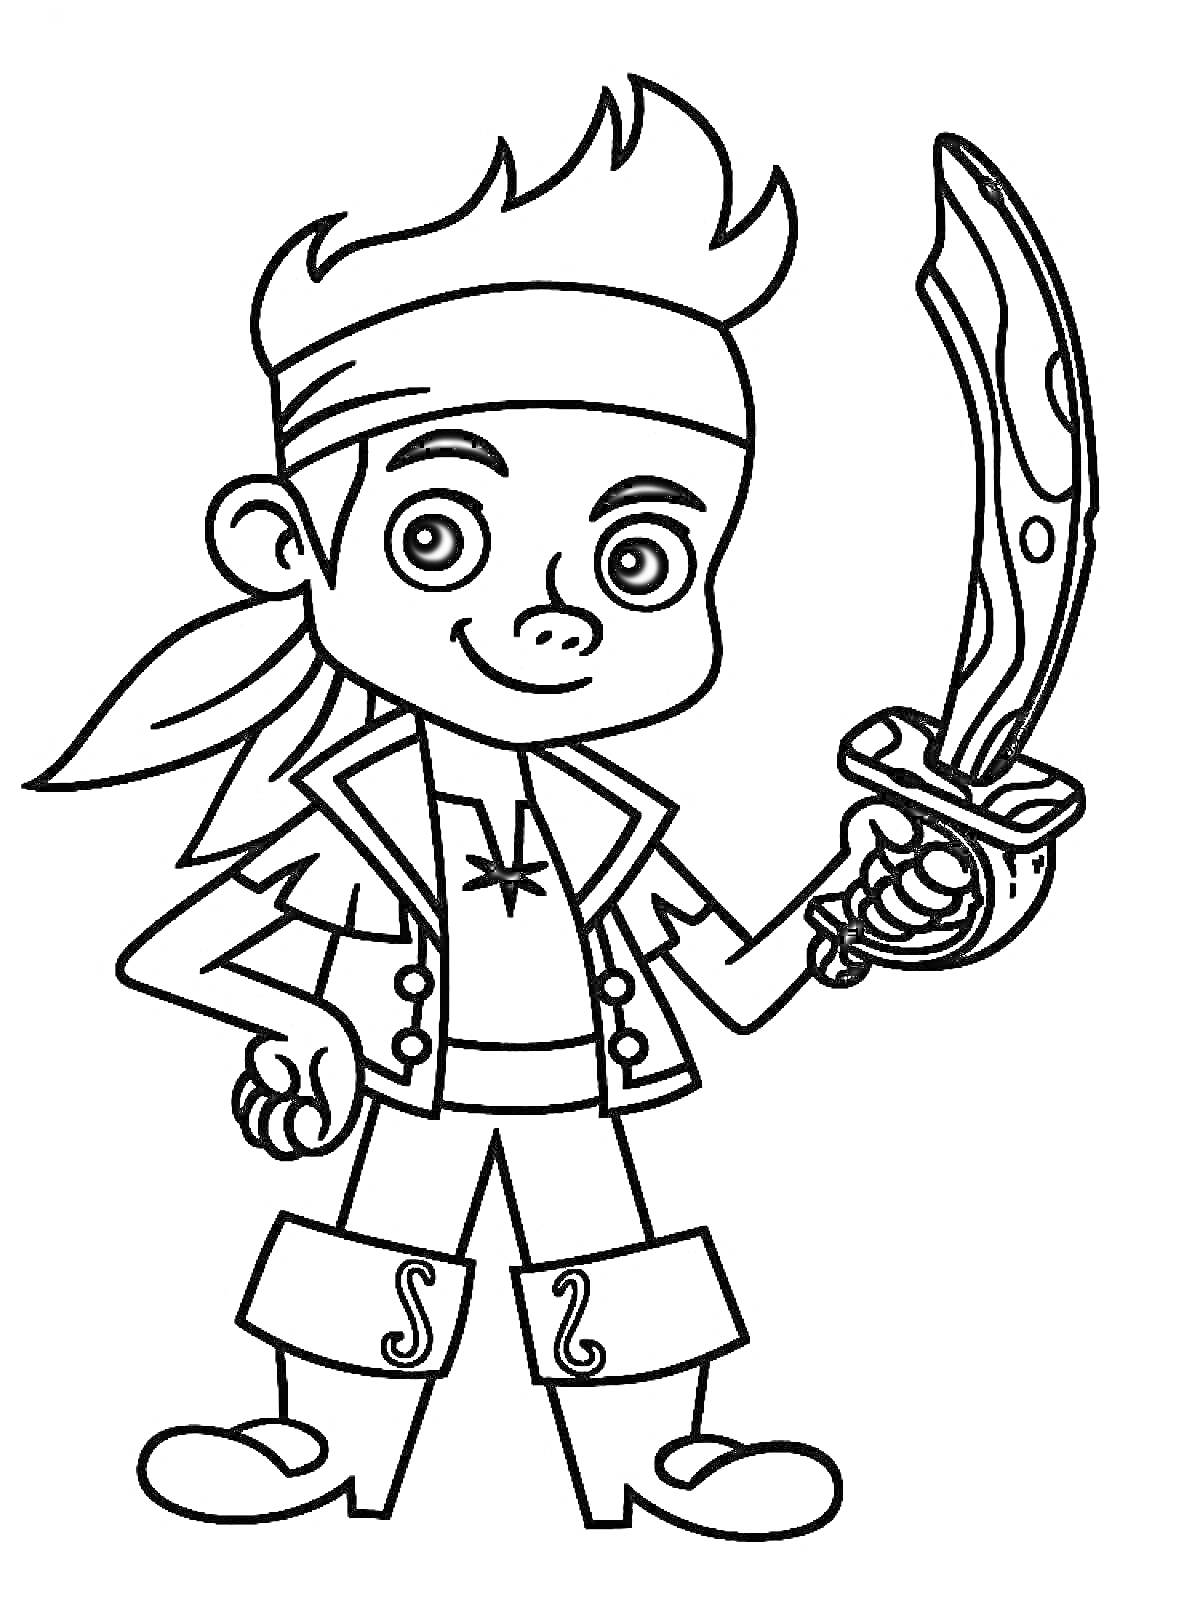 Раскраска Пират с мечом из мультфильма